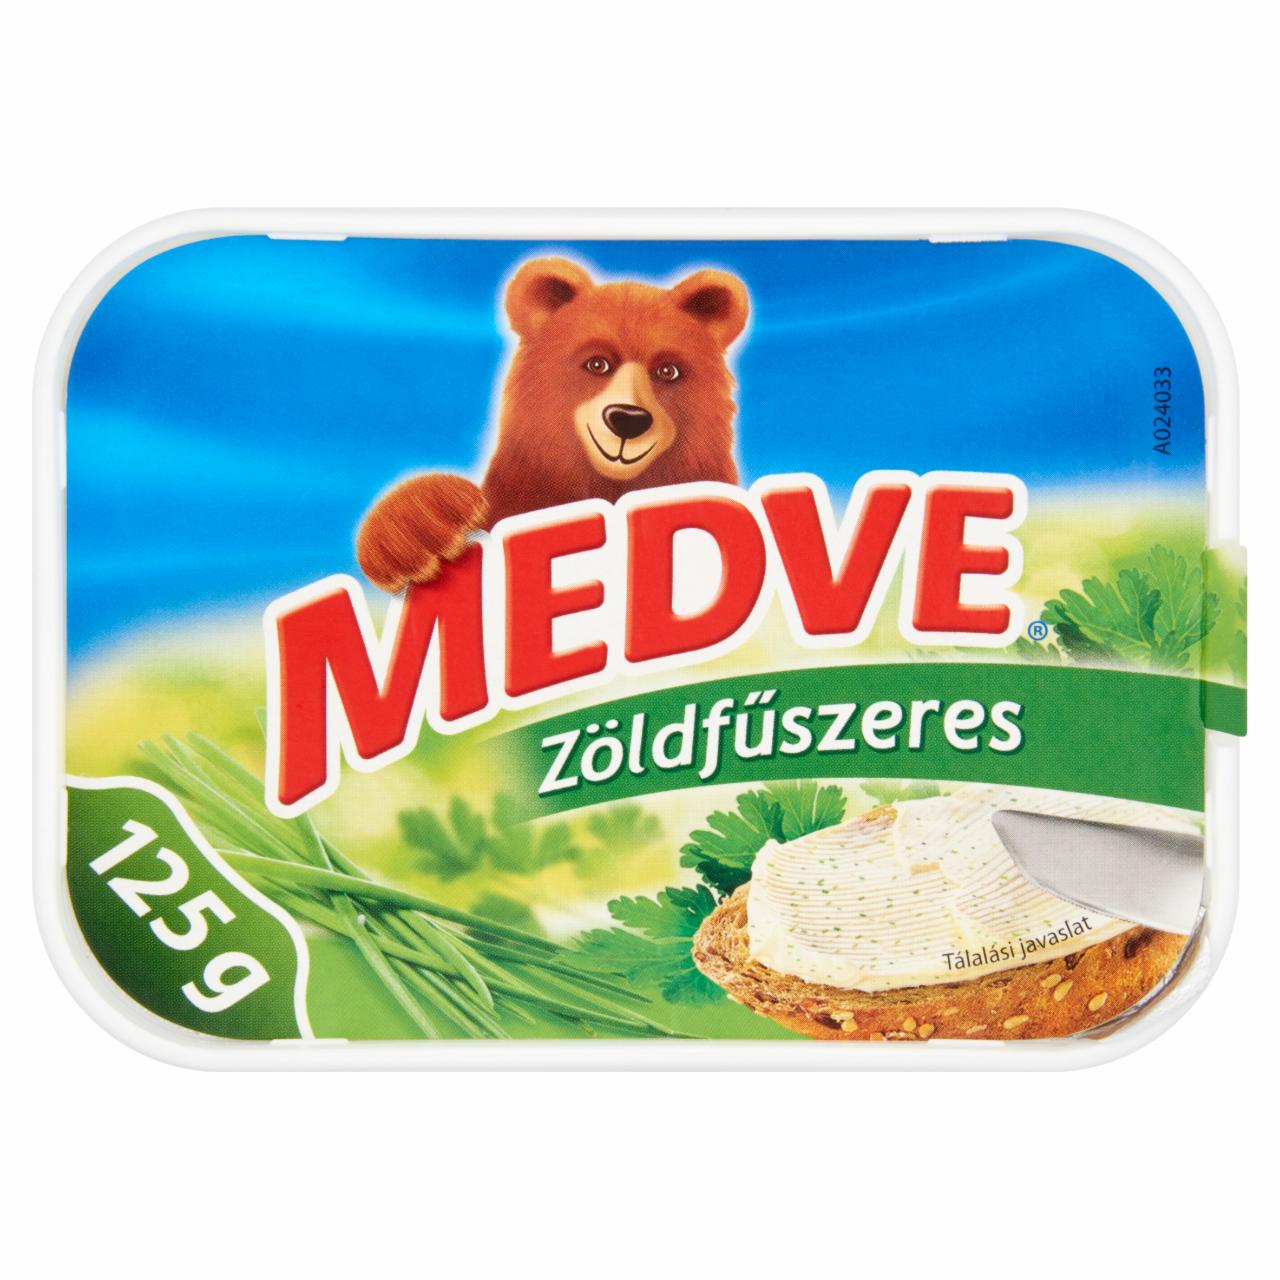 Képek - Medve zöldfűszeres, kenhető, zsíros, ízesített ömlesztett sajtkrém 125 g